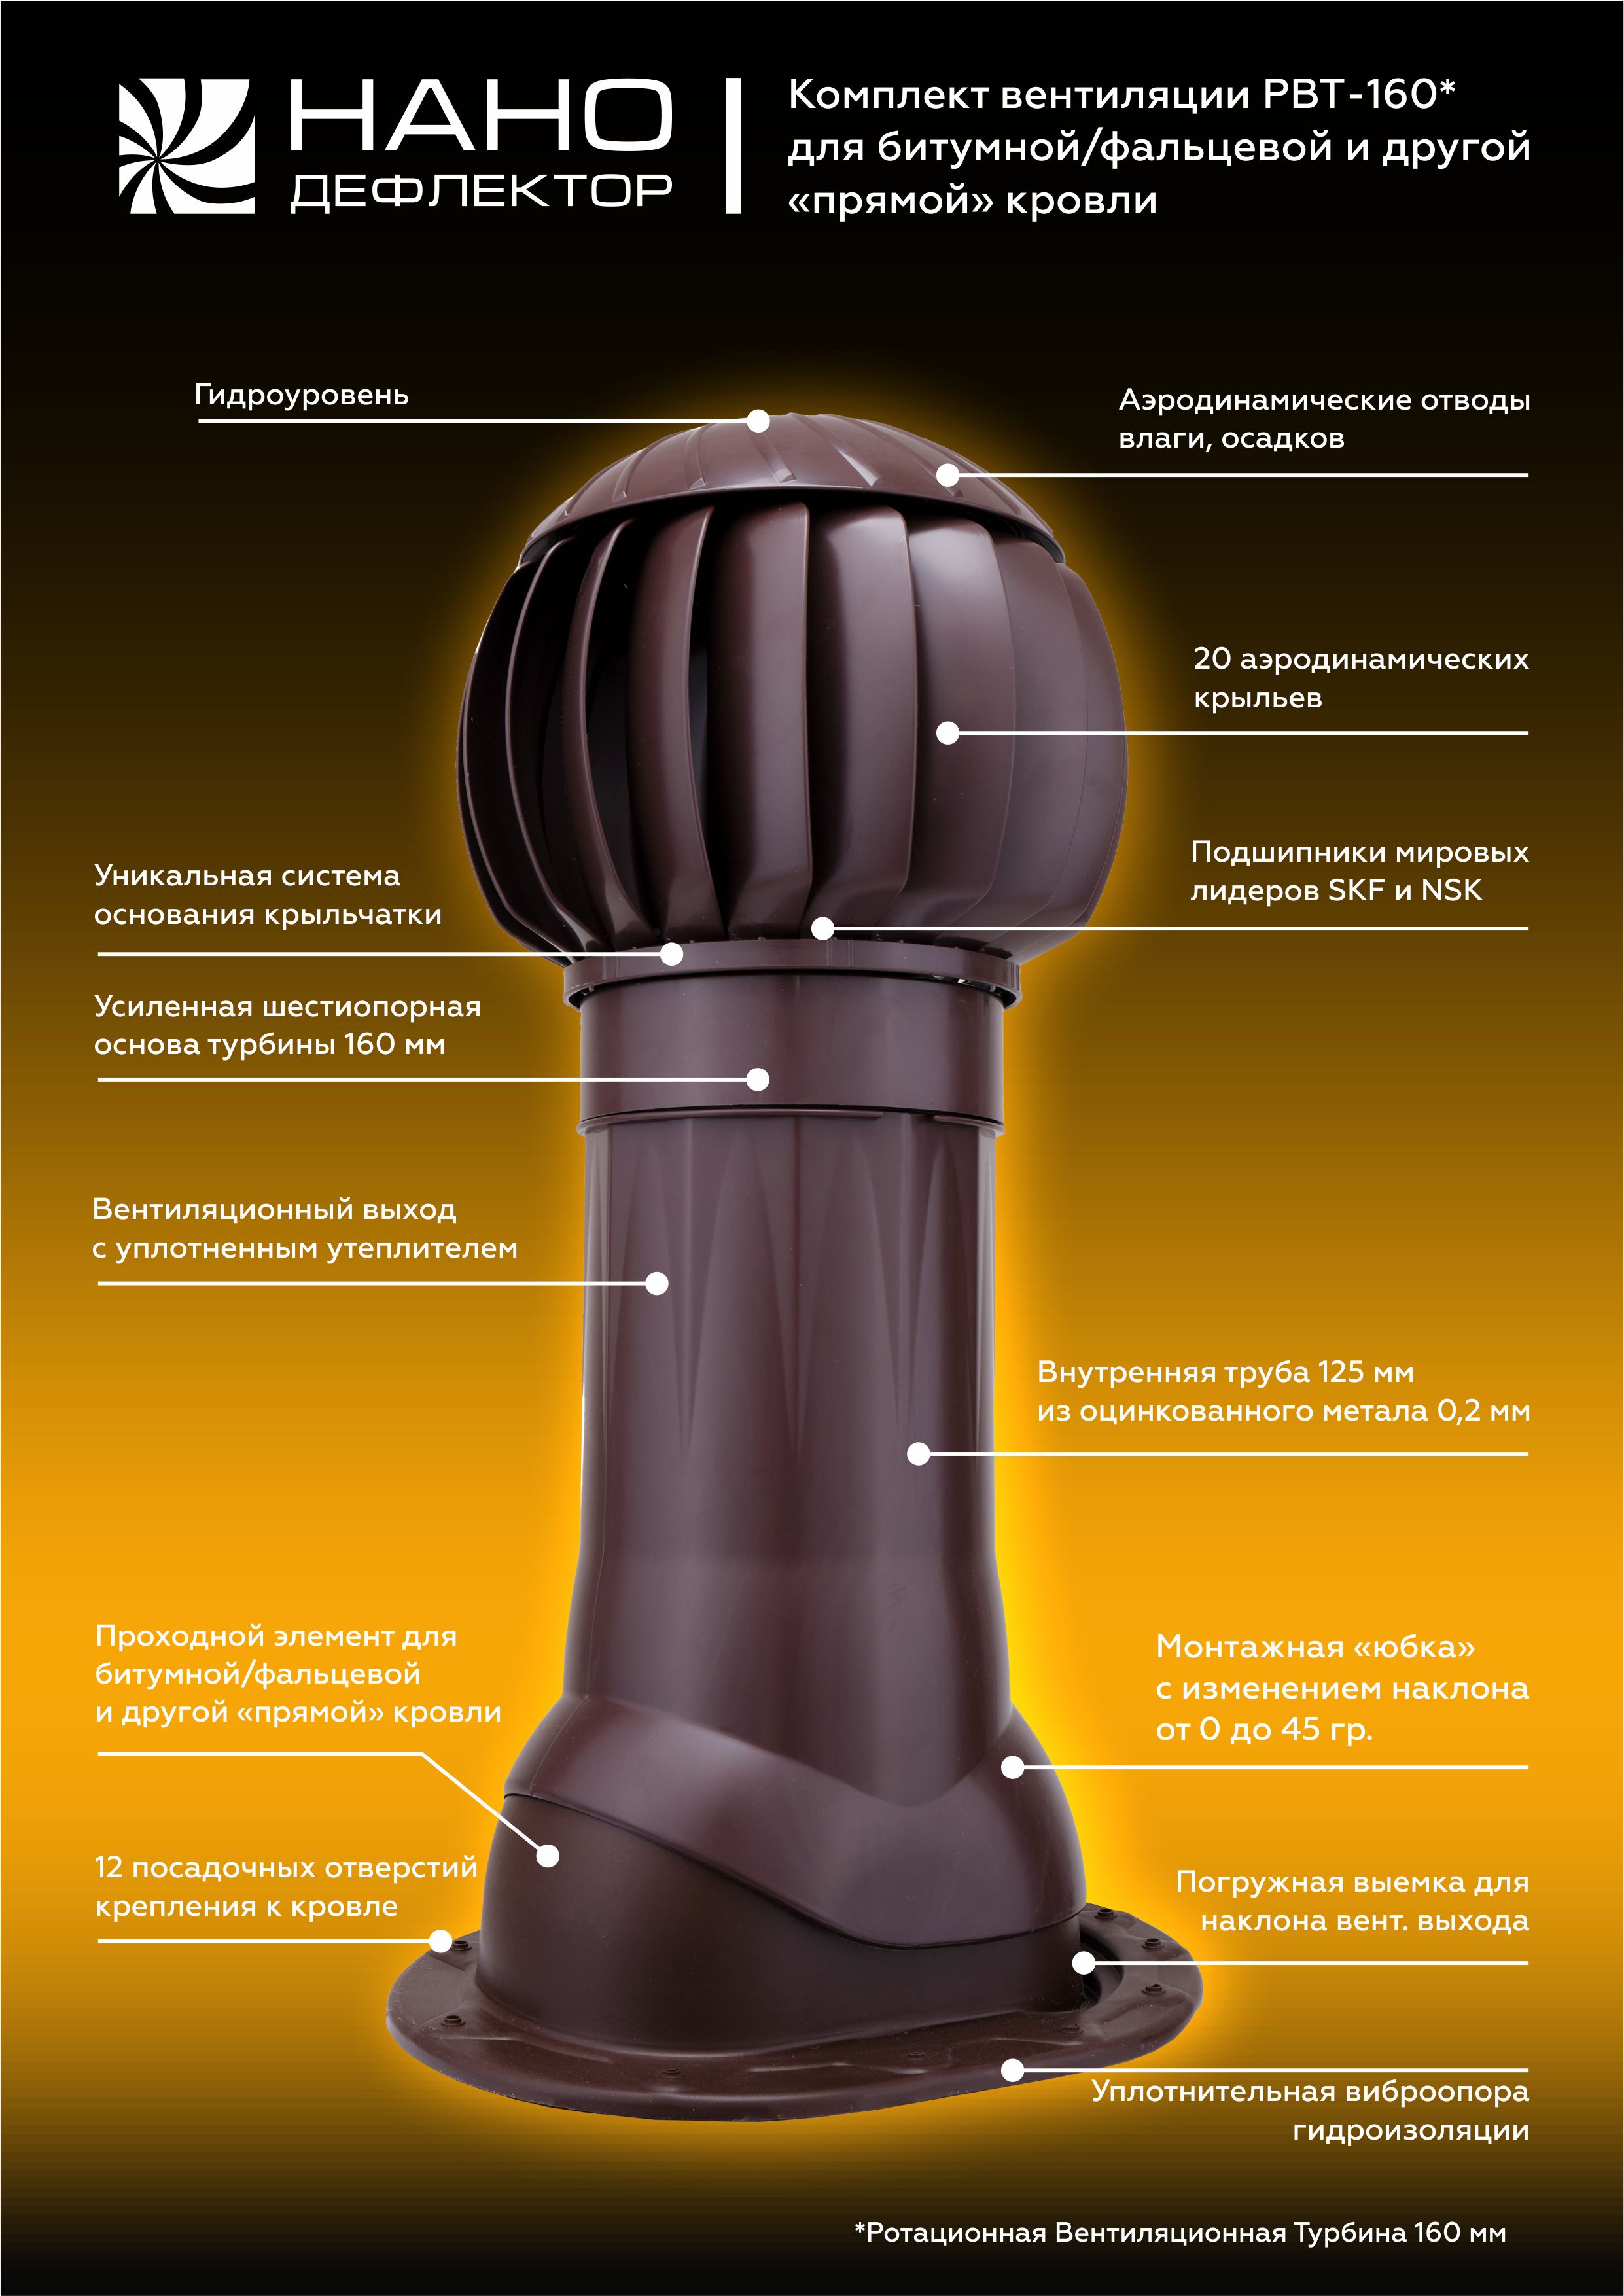 Турбодефлектор РВТ-160, Комплект универсалный для любого профиля — купить в СПб | CLIMATE GALLERY